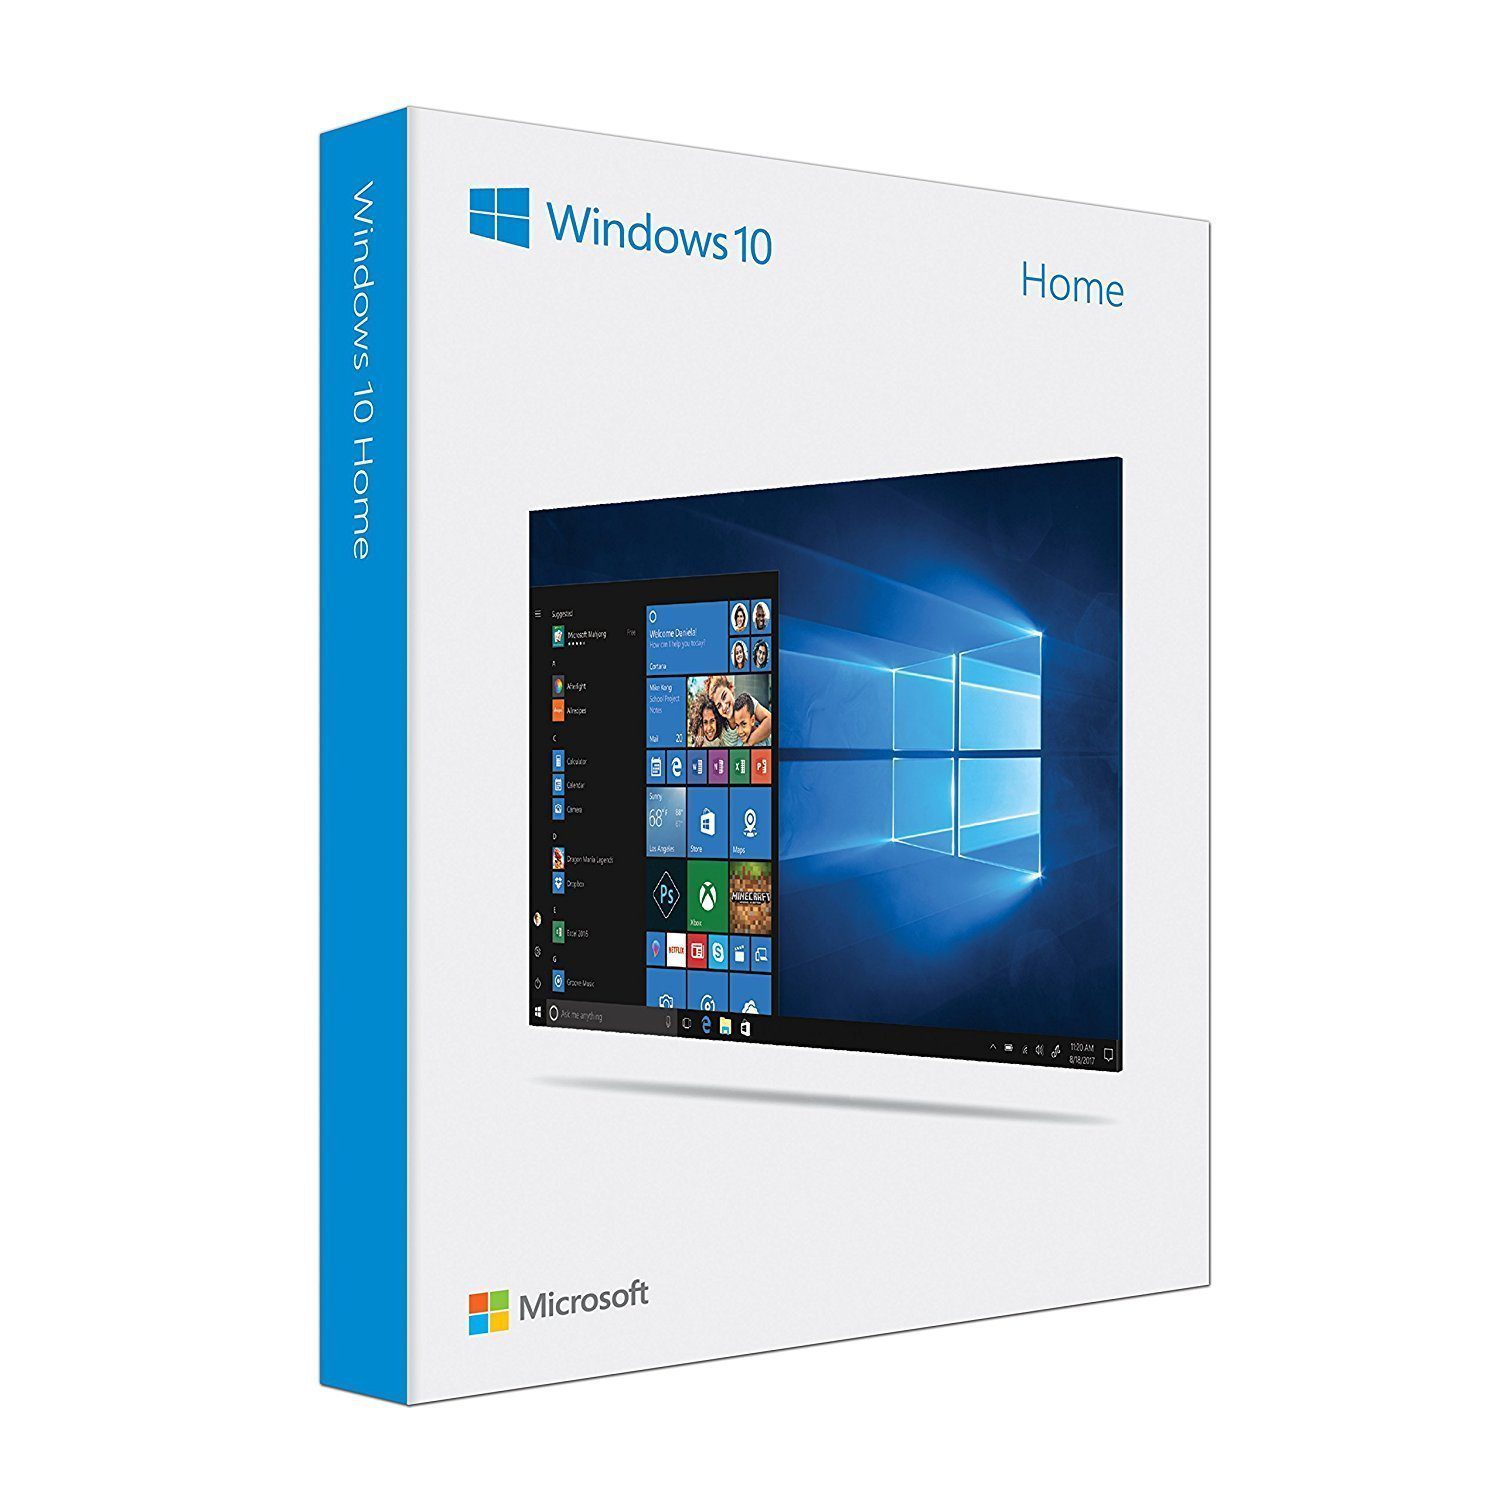 Ofertas de Windows 10: Cómo obtener claves baratas de Windows 10